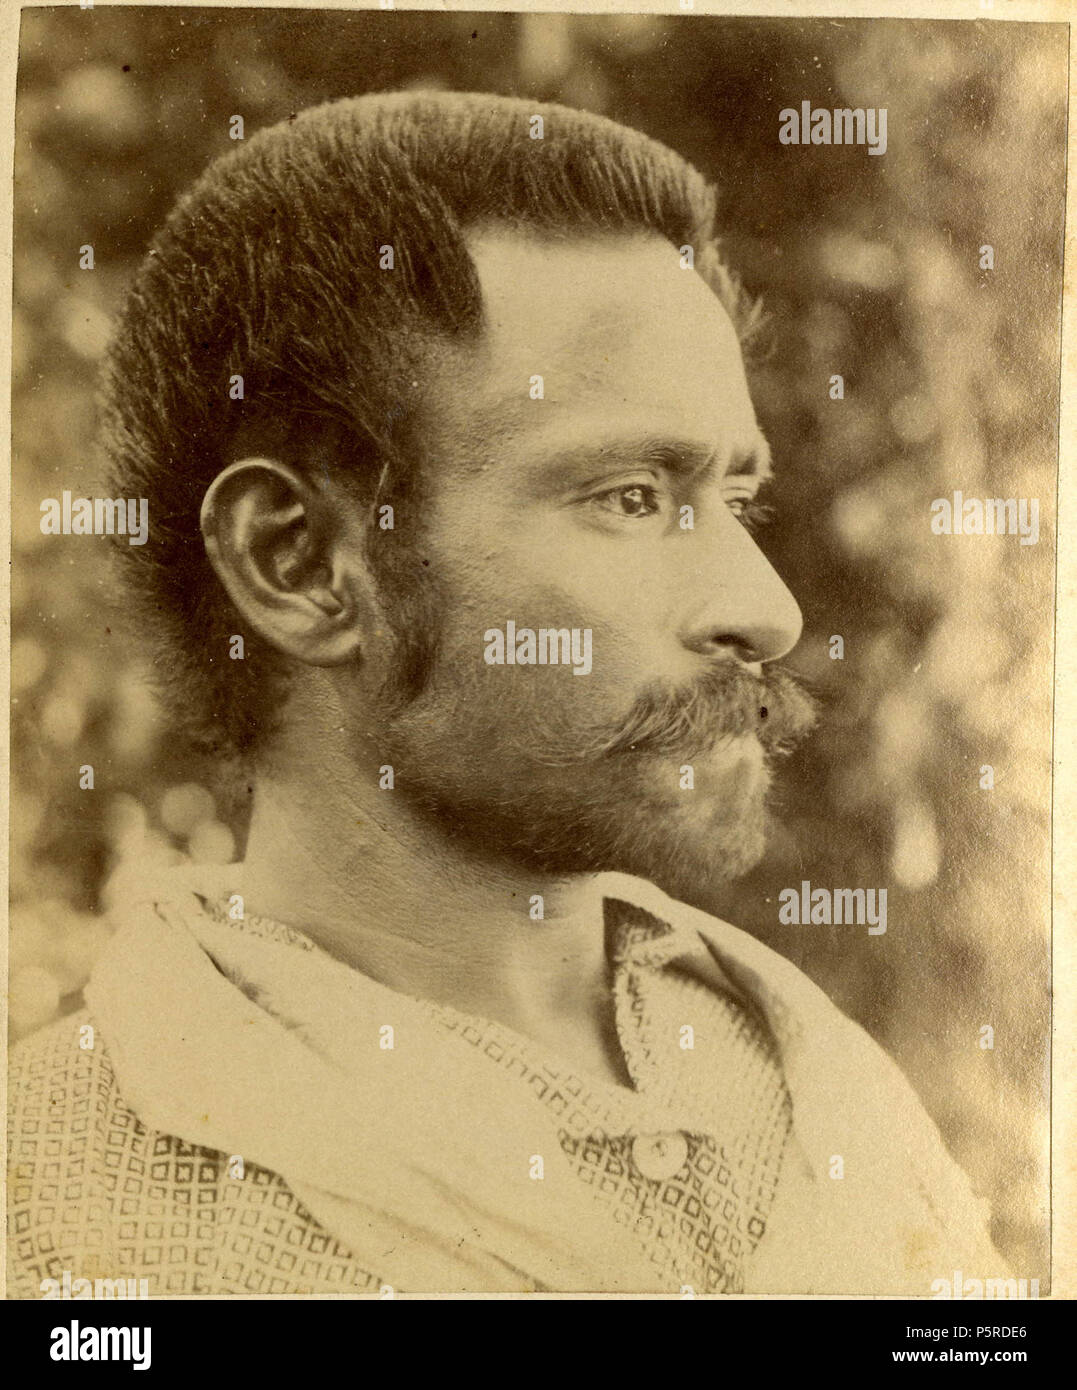 N/A. Fotografía (blanco y negro); tarjeta de gabinete; retrato de un hombre de perfil con un bigote, vestido con una camisa y un trozo de tela envuelto alrededor de su cuello; la Polinesia. Albúmina imprimir imágenes relacionadas: Oc,B42,B55 a través de Oc todos contienen Joseph Jackson Lister donación imágenes. Entre 1889 y 1890. Desconocida; posiblemente (Joseph Jackson Lister; 1857-1911) 261 tarjeta de Gabinete; retrato de un hombre de perfil con un bigote, vestido con una camisa y un trozo de tela envuelto alrededor de su cuello; la Polinesia. Albúmina impresión. Oc,B43.16, Museo Británico Foto de stock